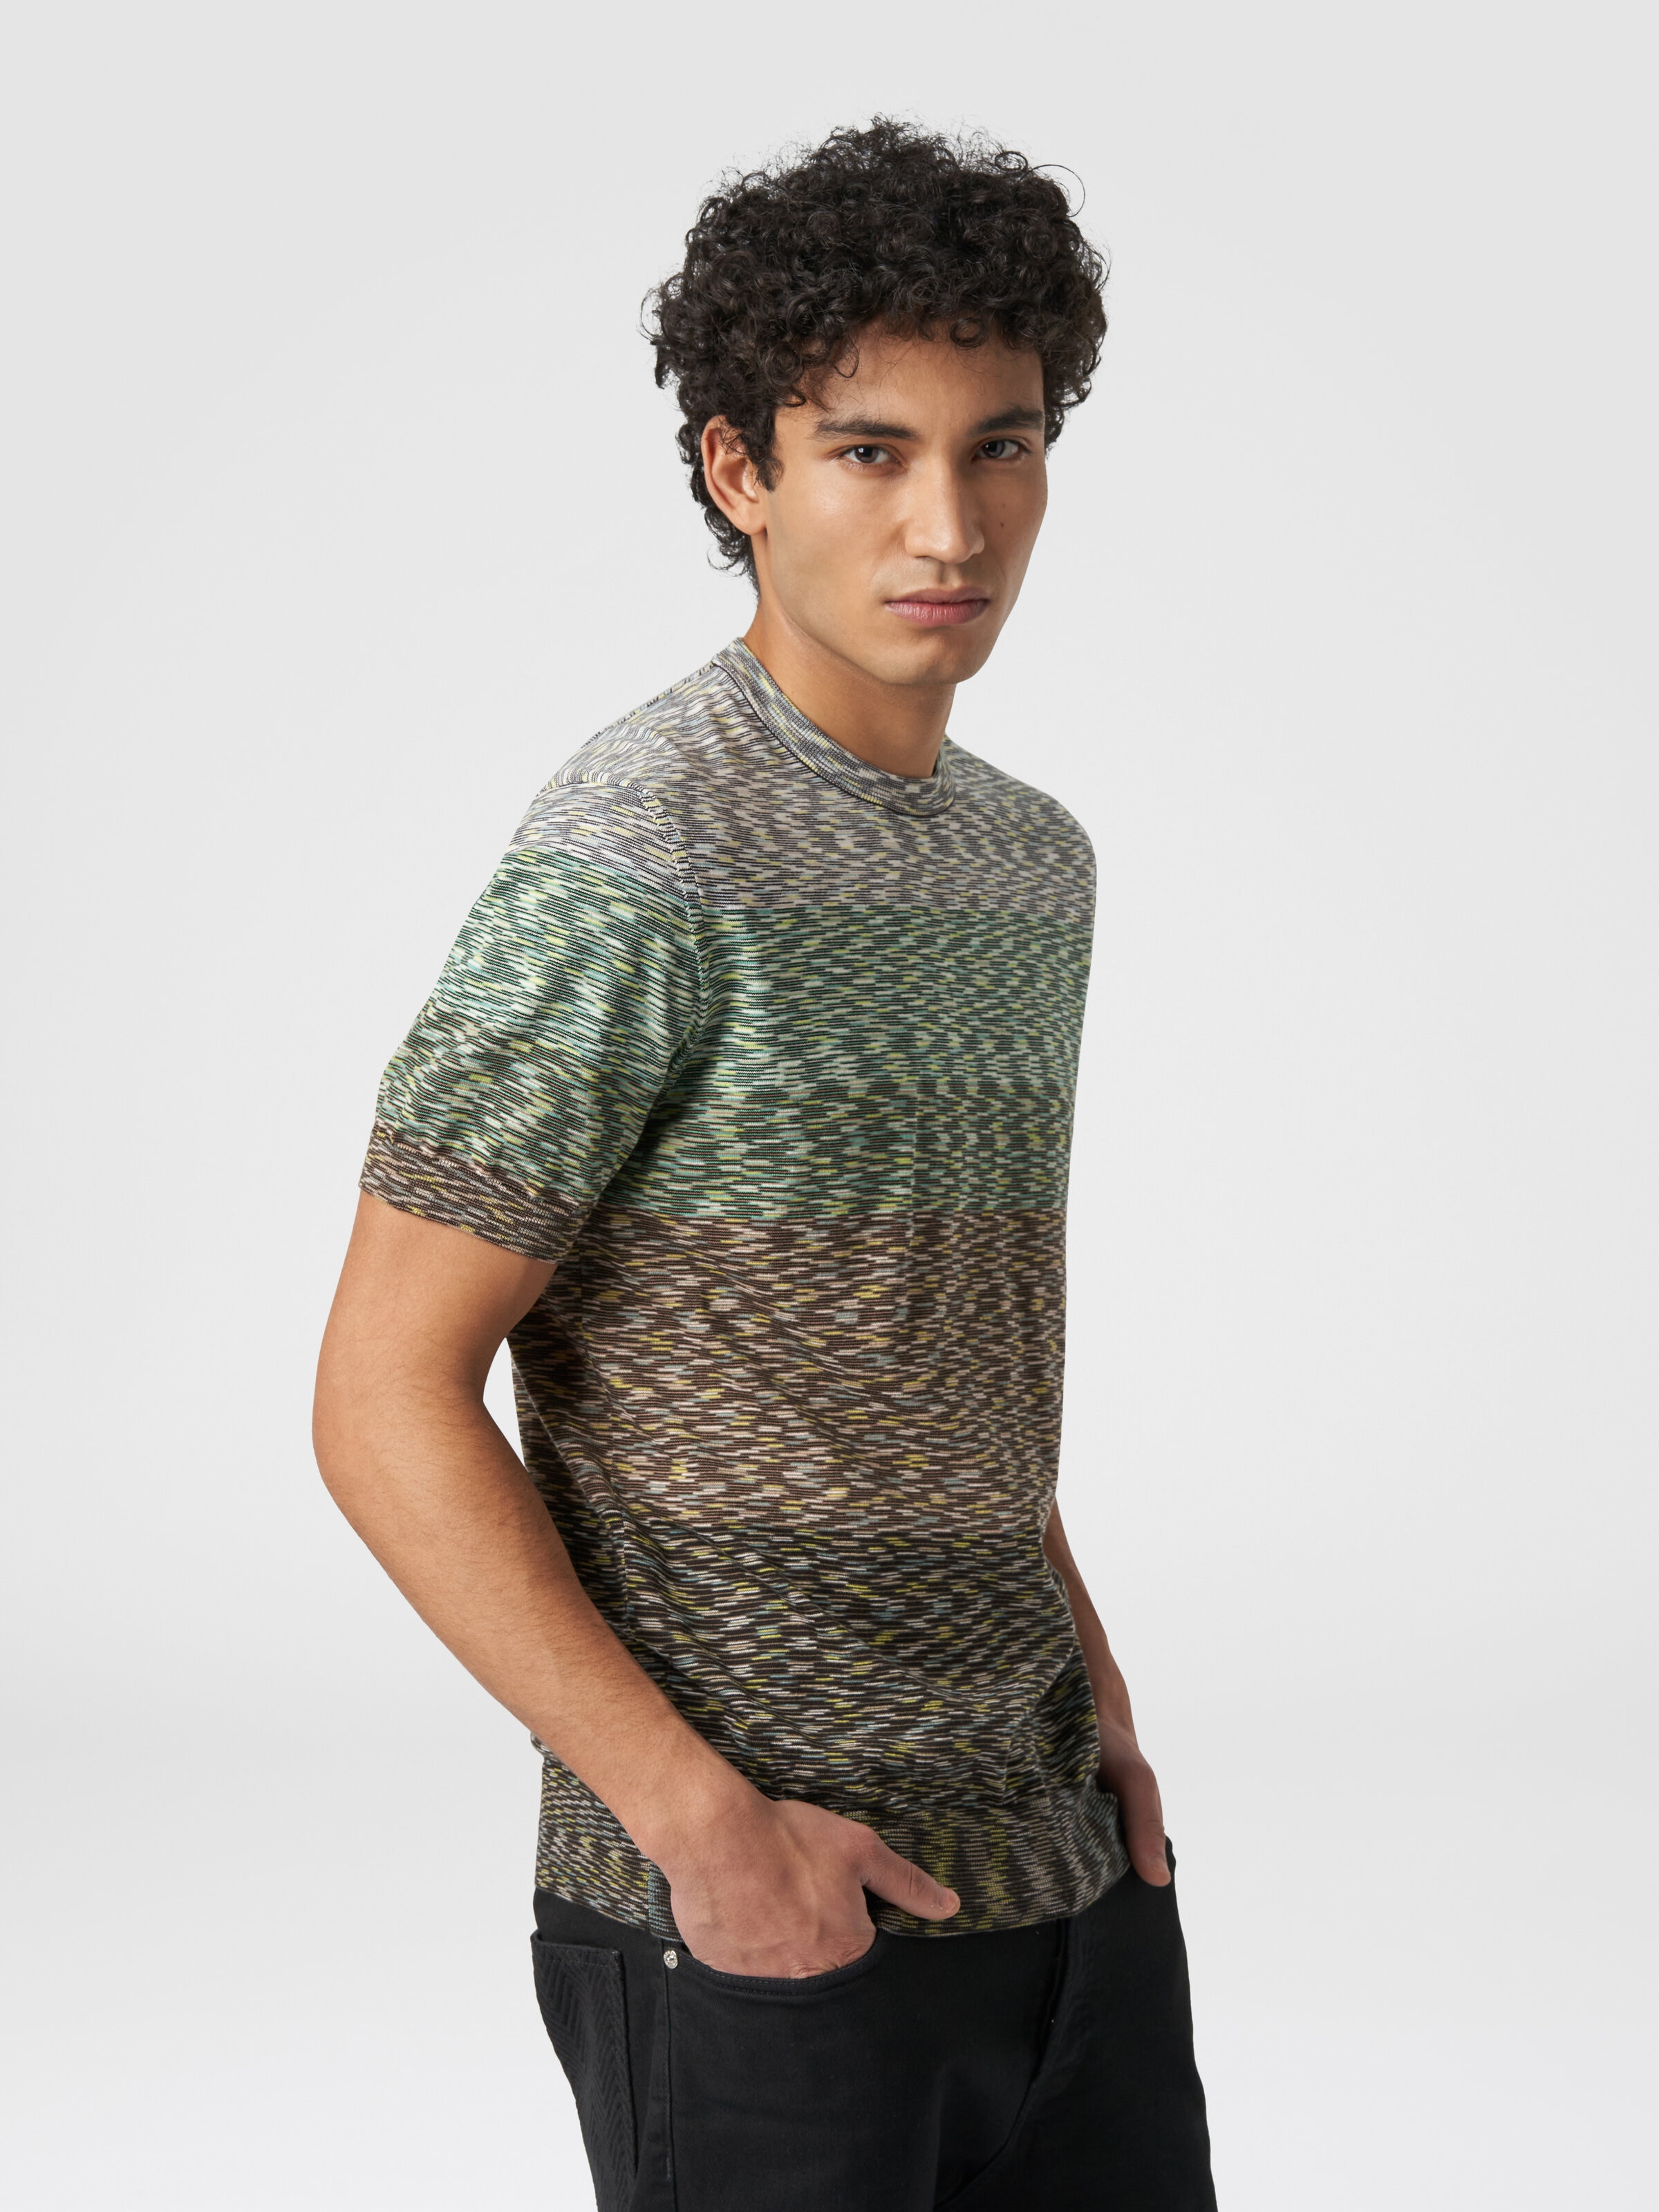 Camiseta de cuello redondo en algodón flameado degradado, Multicolor  - 3